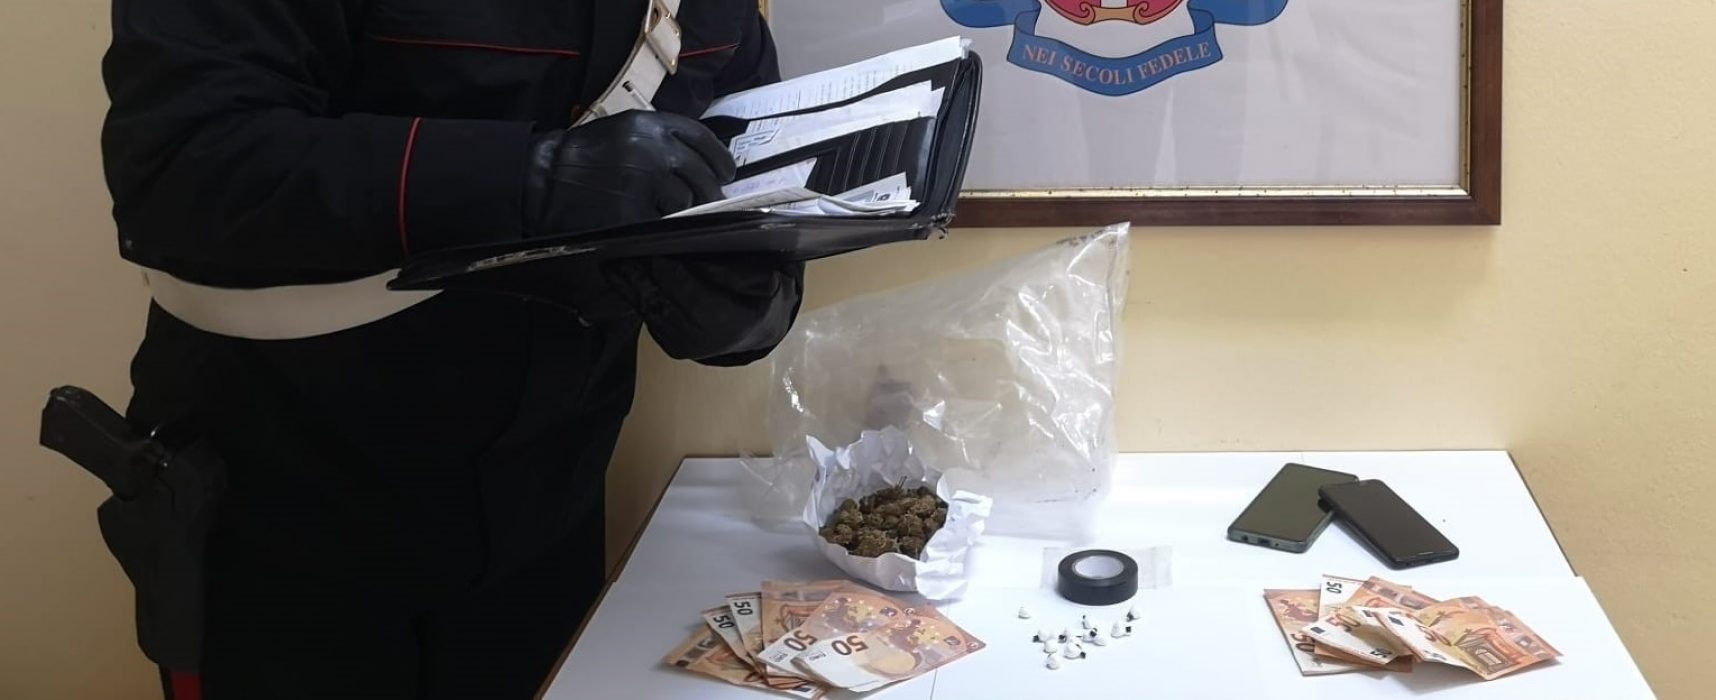 Carabinieri di Bisceglie arrestano 34enne in possesso di tredici dosi di cocaina